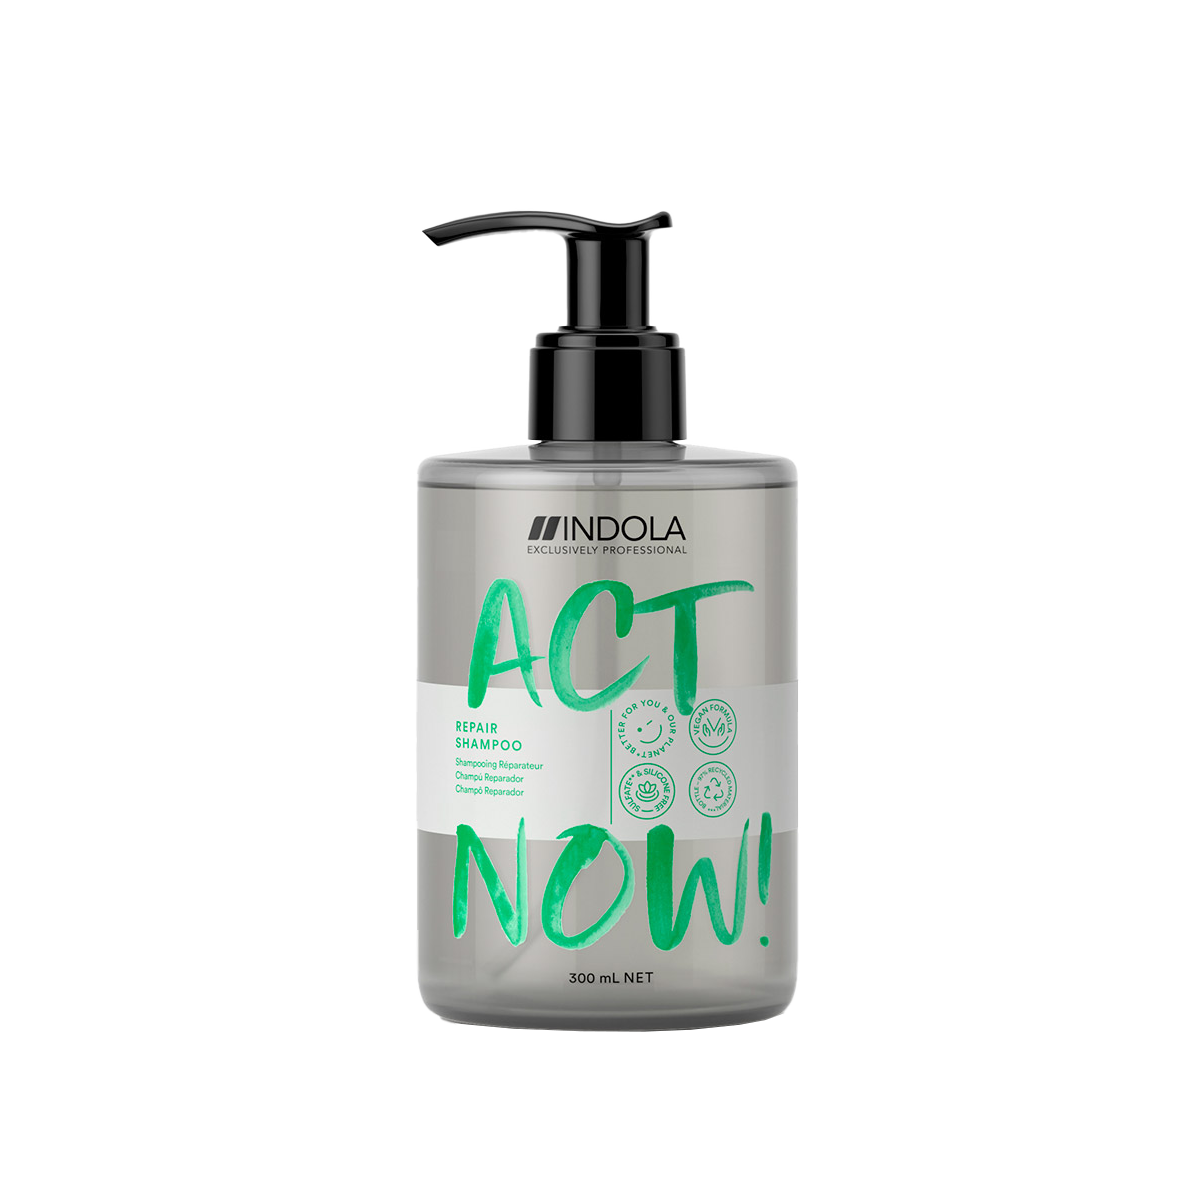 Indola Act Now! регенерирующий шампунь для волос, 300 мл indola act now воск с эффектом блеска 85 мл